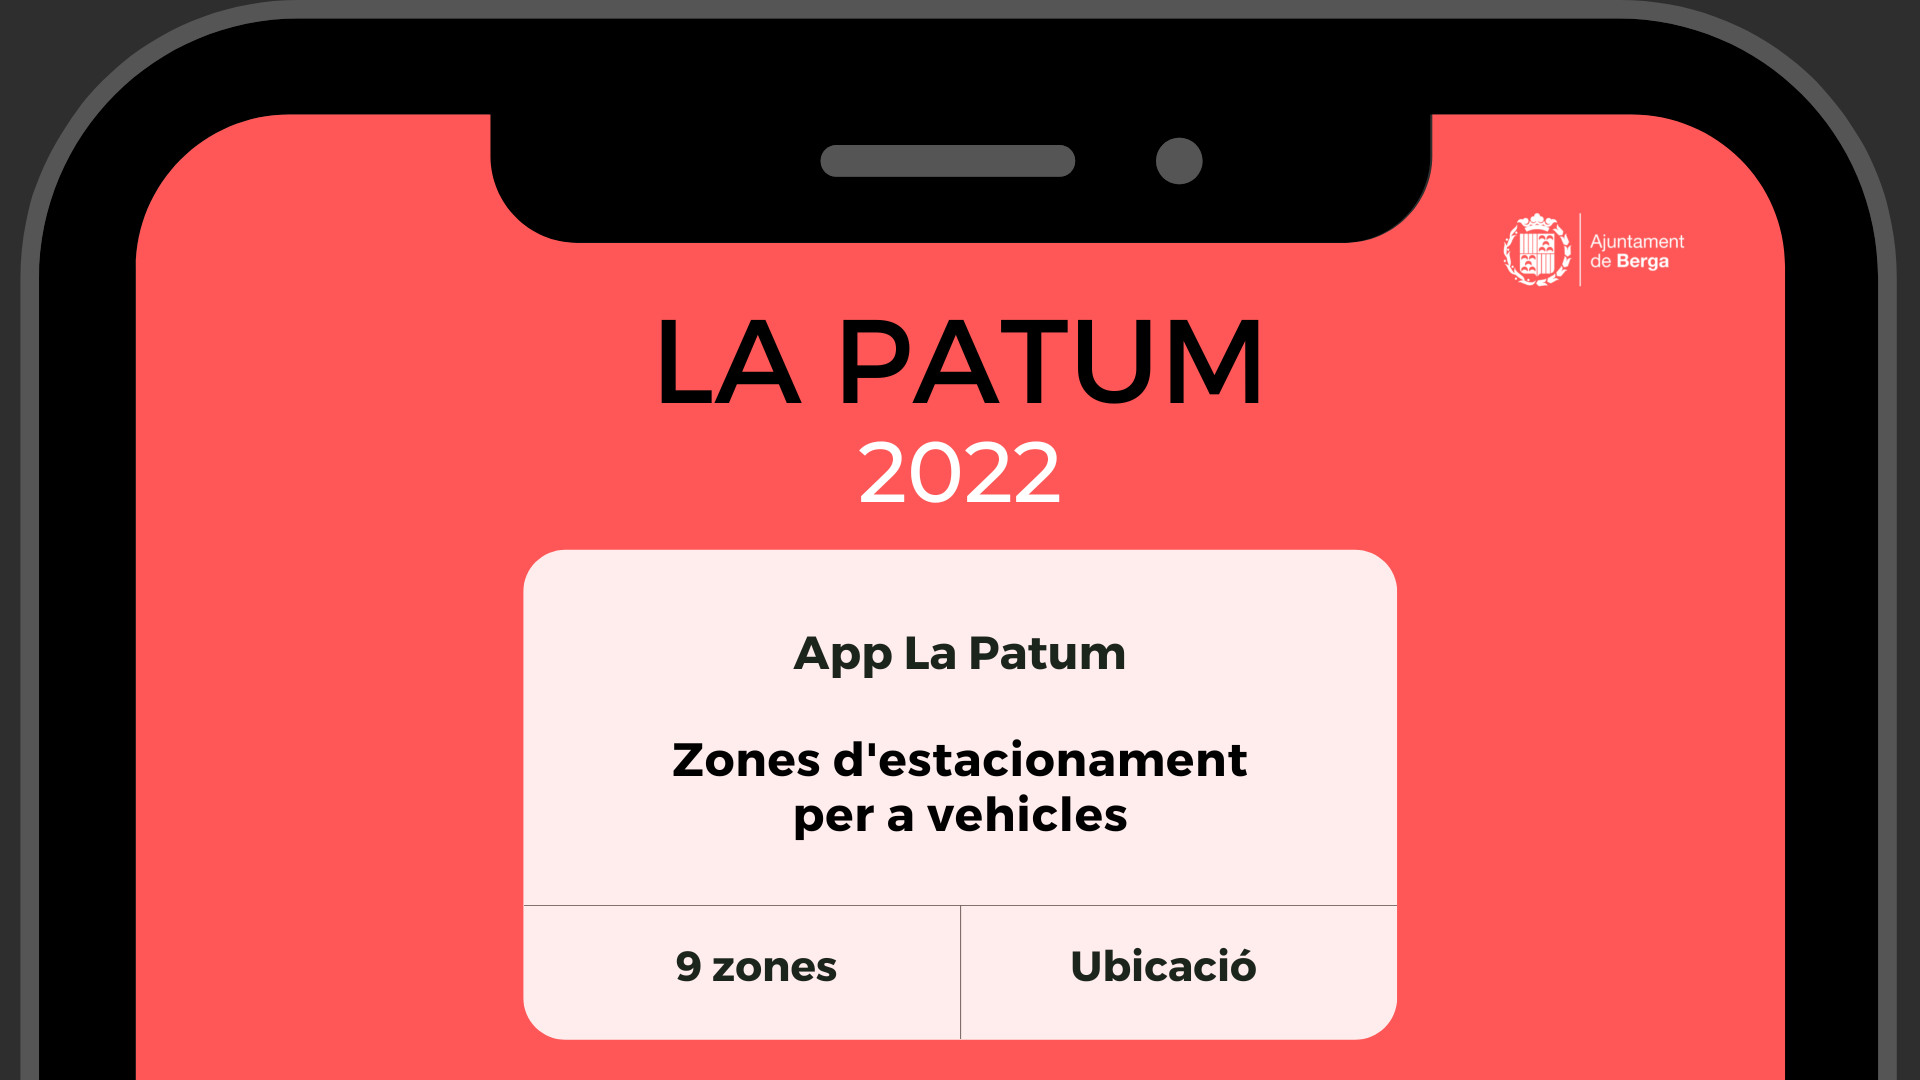 Zones d'aparcament  - Patum 2022 